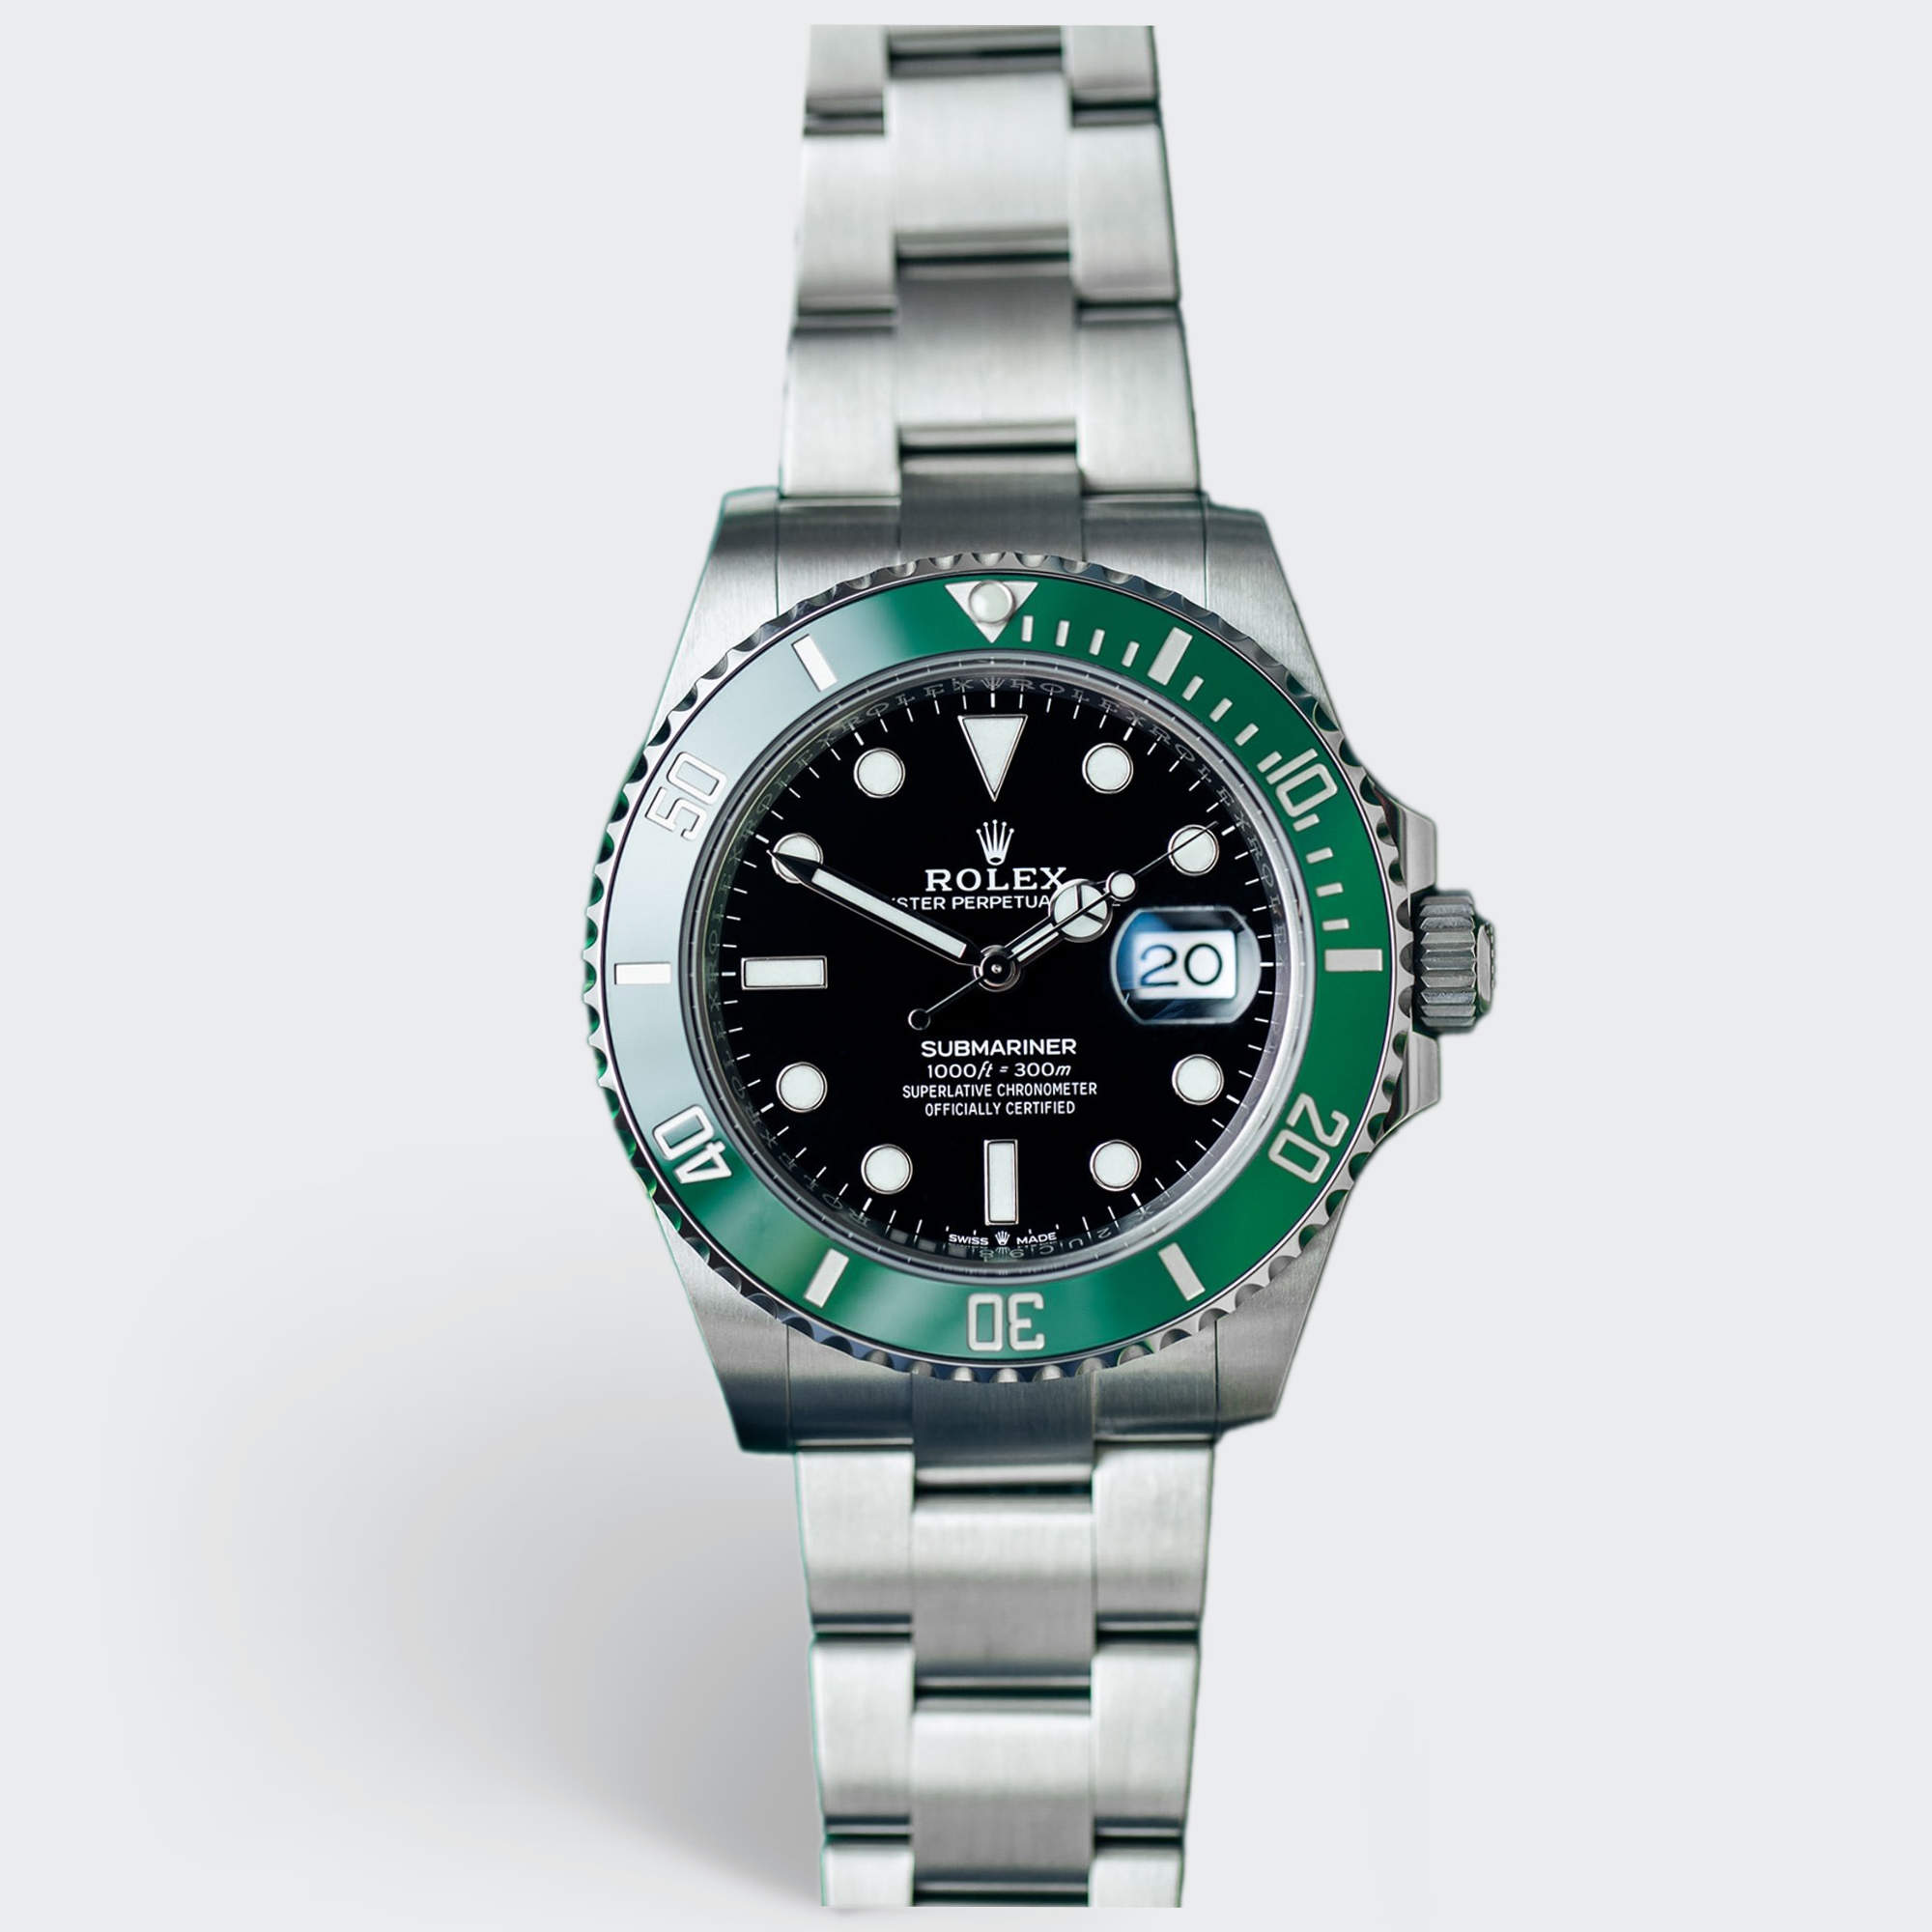 Rolex Submariner Date 126610lv 438p9066 Black Men's Wrist Watch